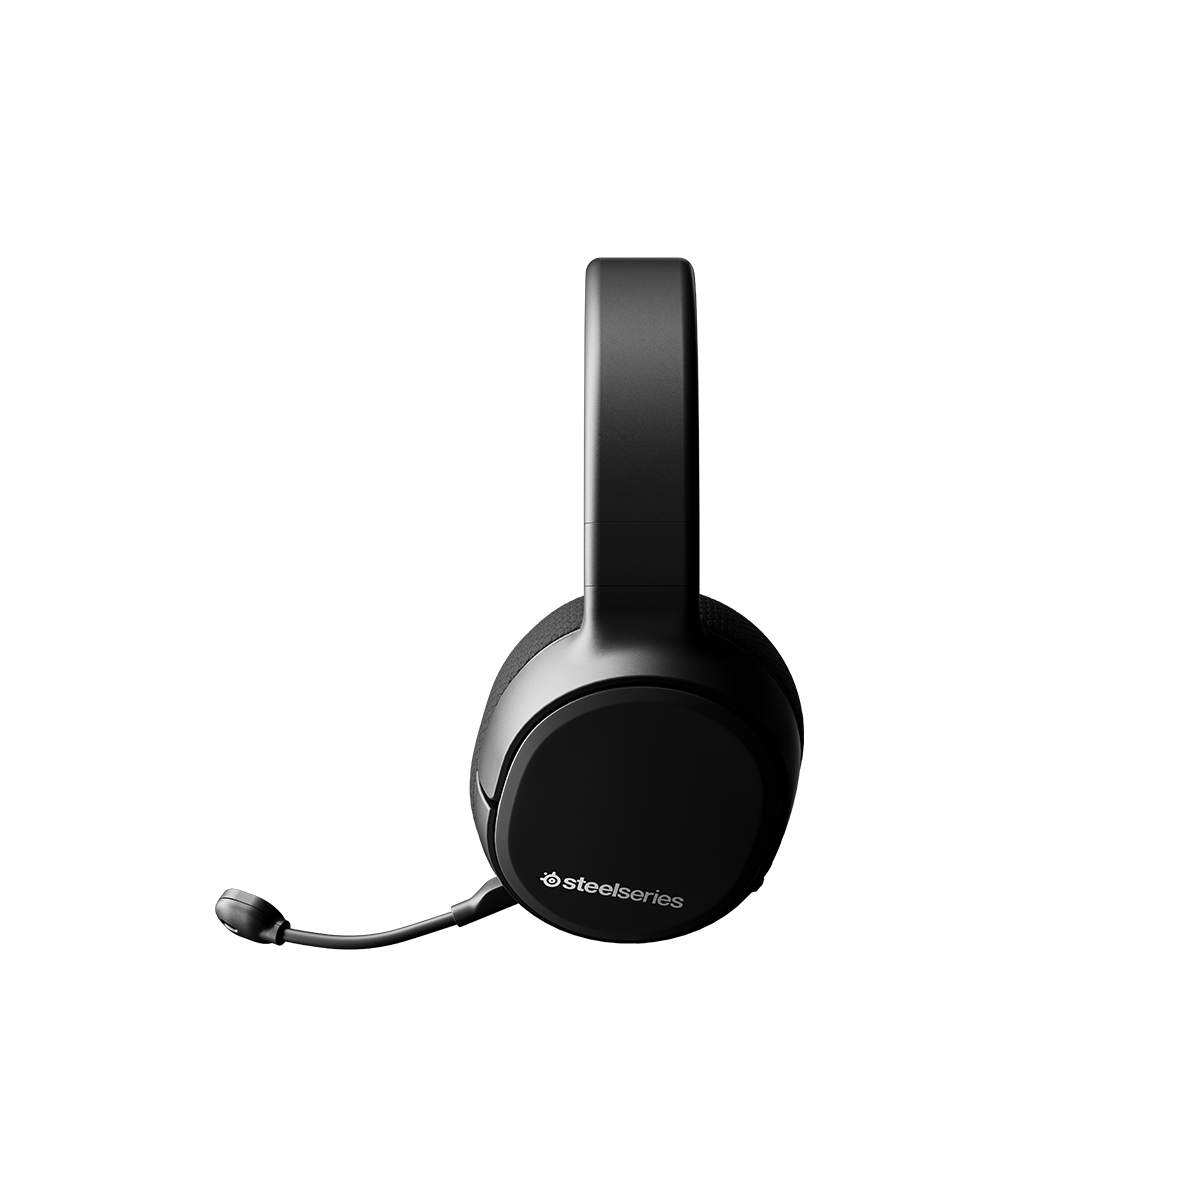 Tai nghe chụp tai gaming không dây SteelSeries Arctis 1 Wireless màu đen, thời gian nghe 20H, Hàng chính hãng, Bảo hành 1 năm